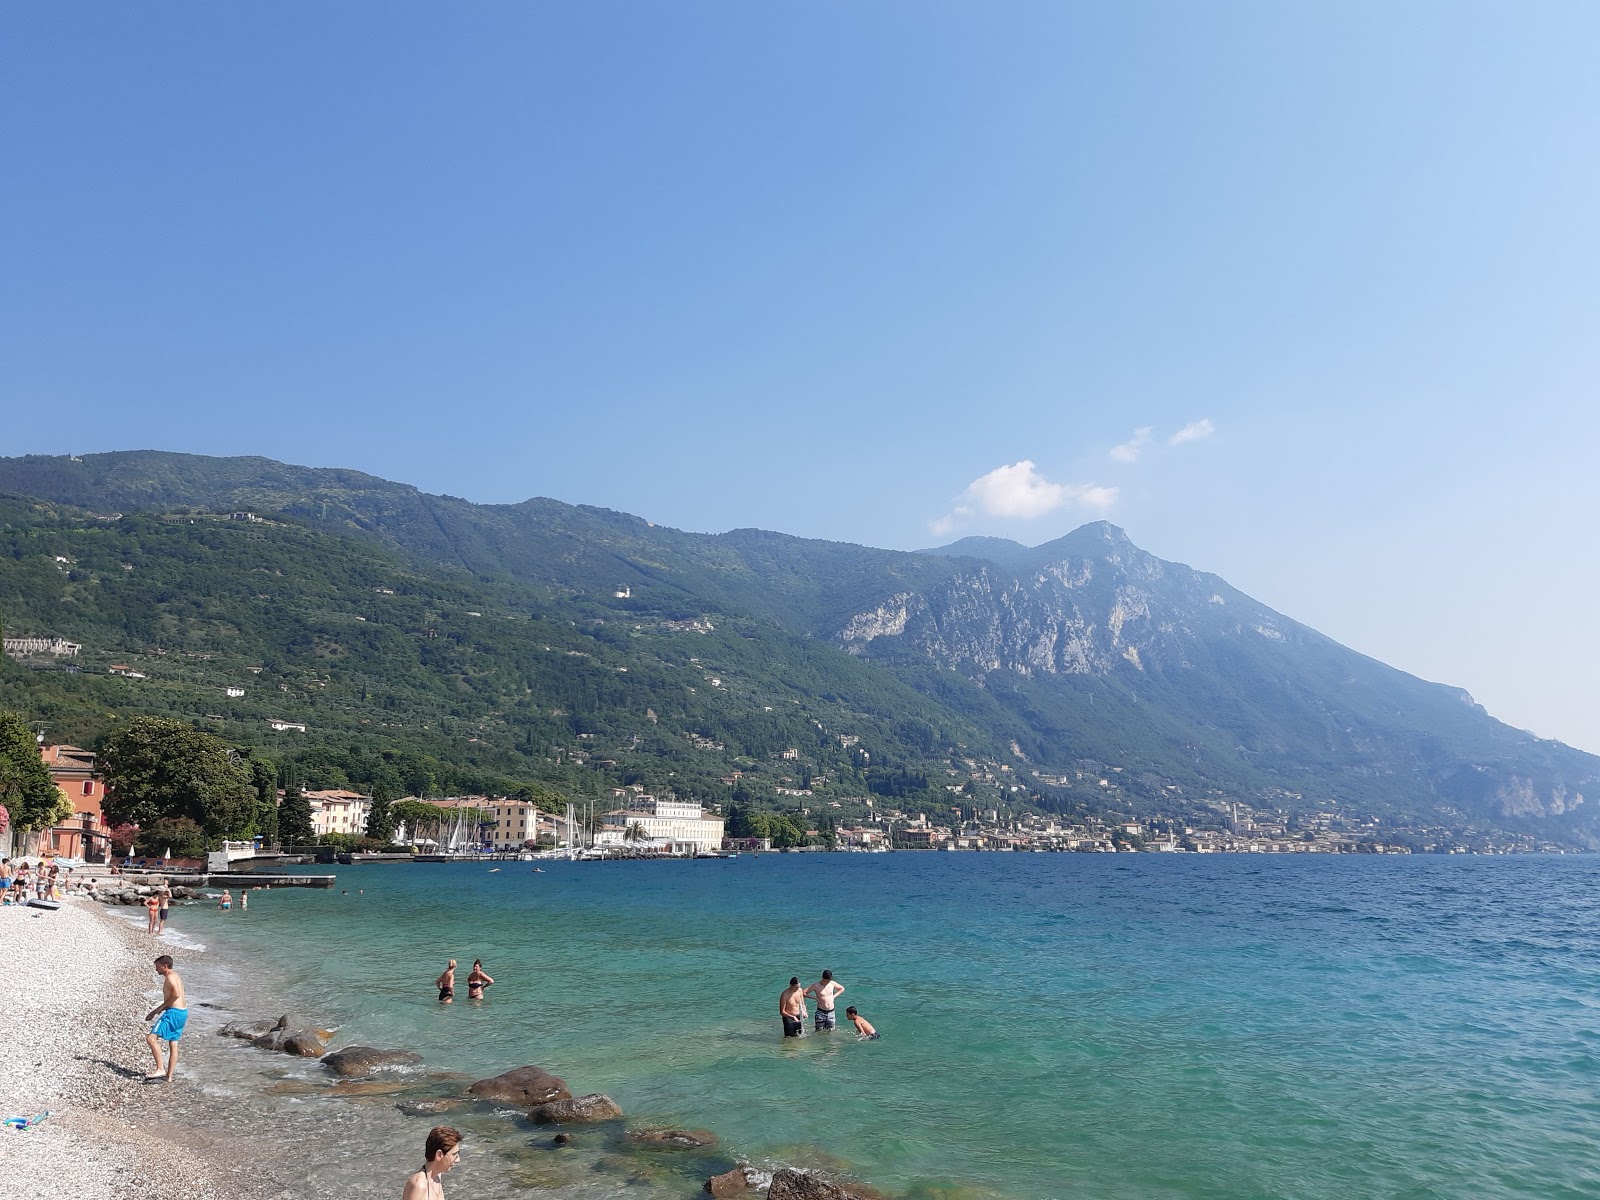 Photo of Spiaggia del Corno with gray pebble surface